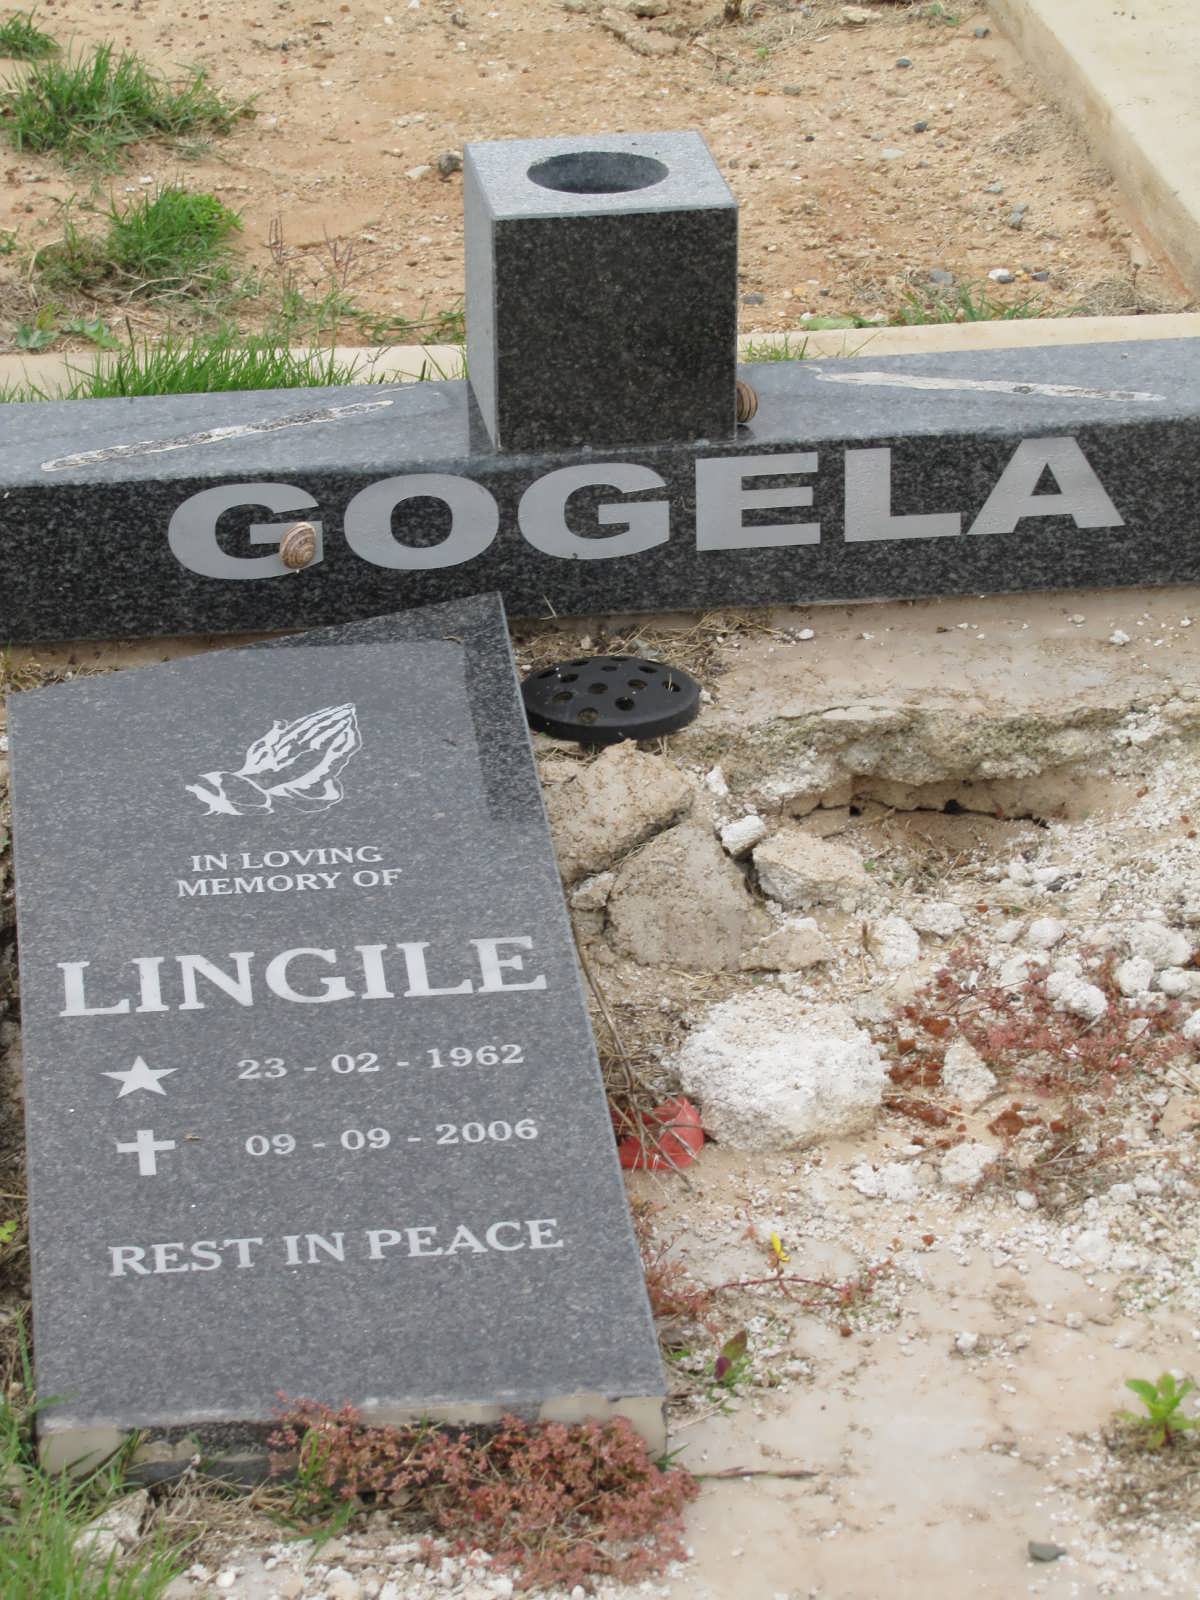 GOGELA Lingile 1962-2006